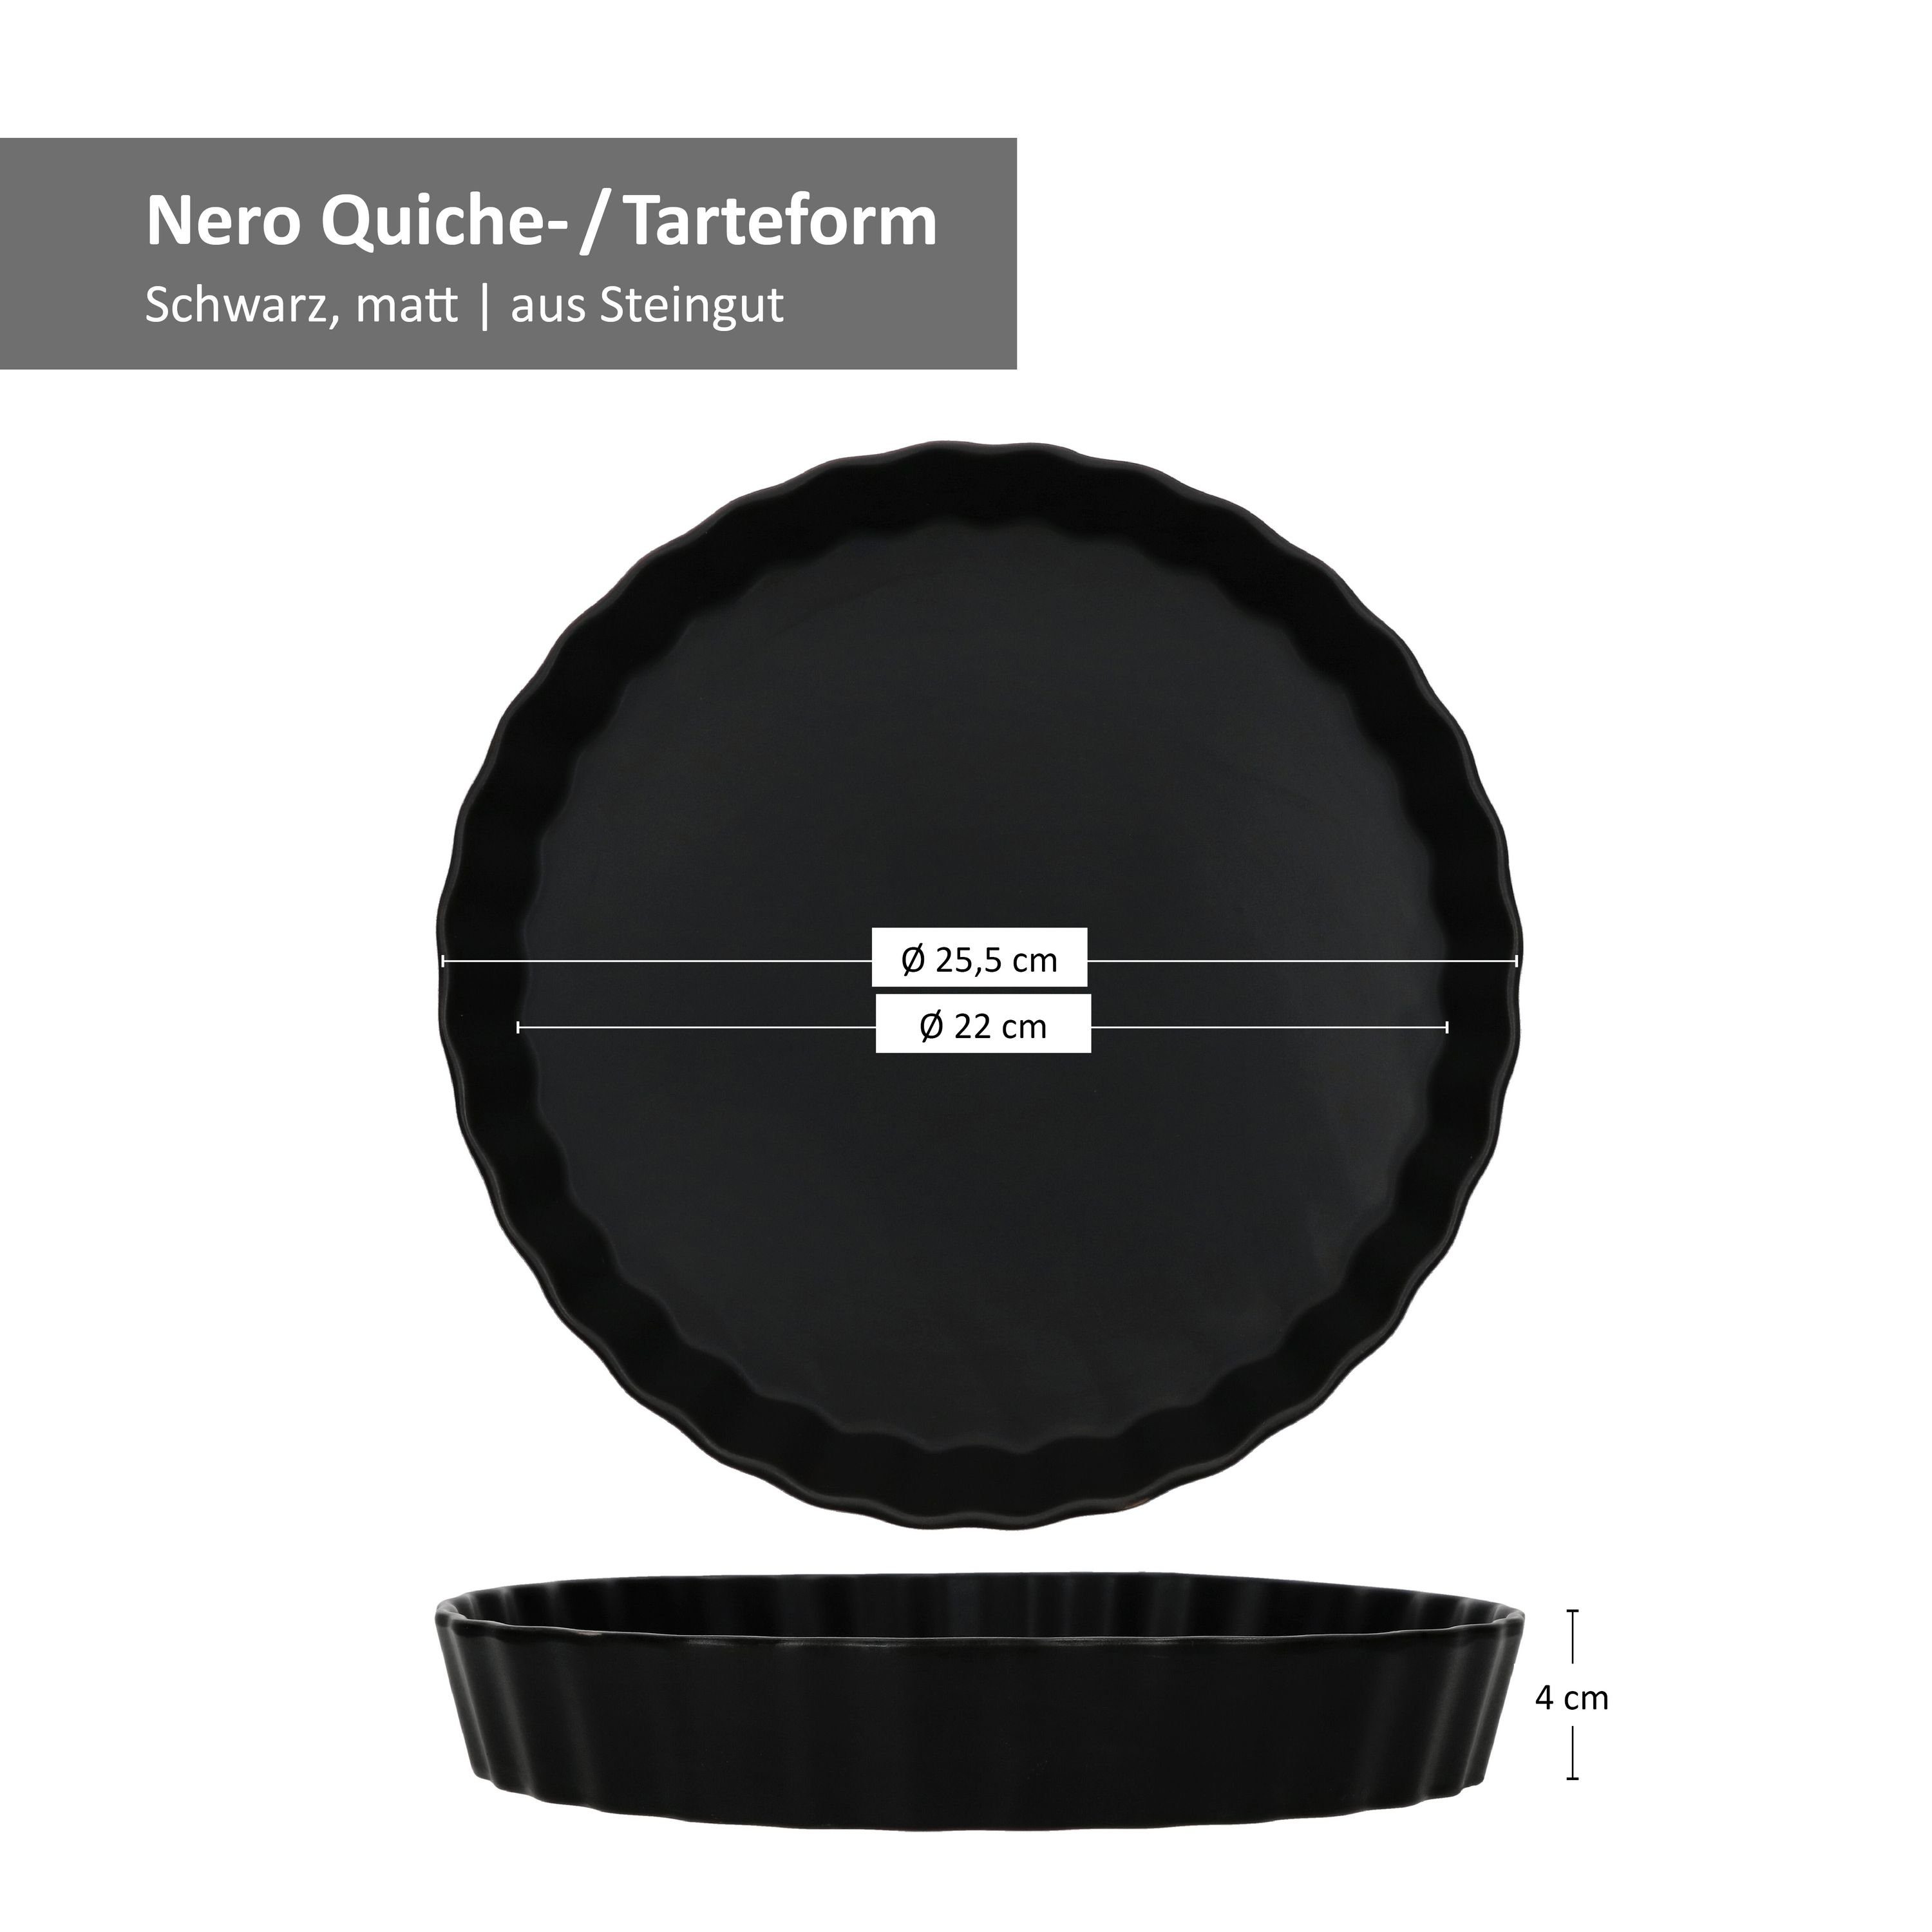 Kuchenform Nero Tarte MamboCat Quiche Steingut Quicheform Ø25,5cm schwarz Pie Backform